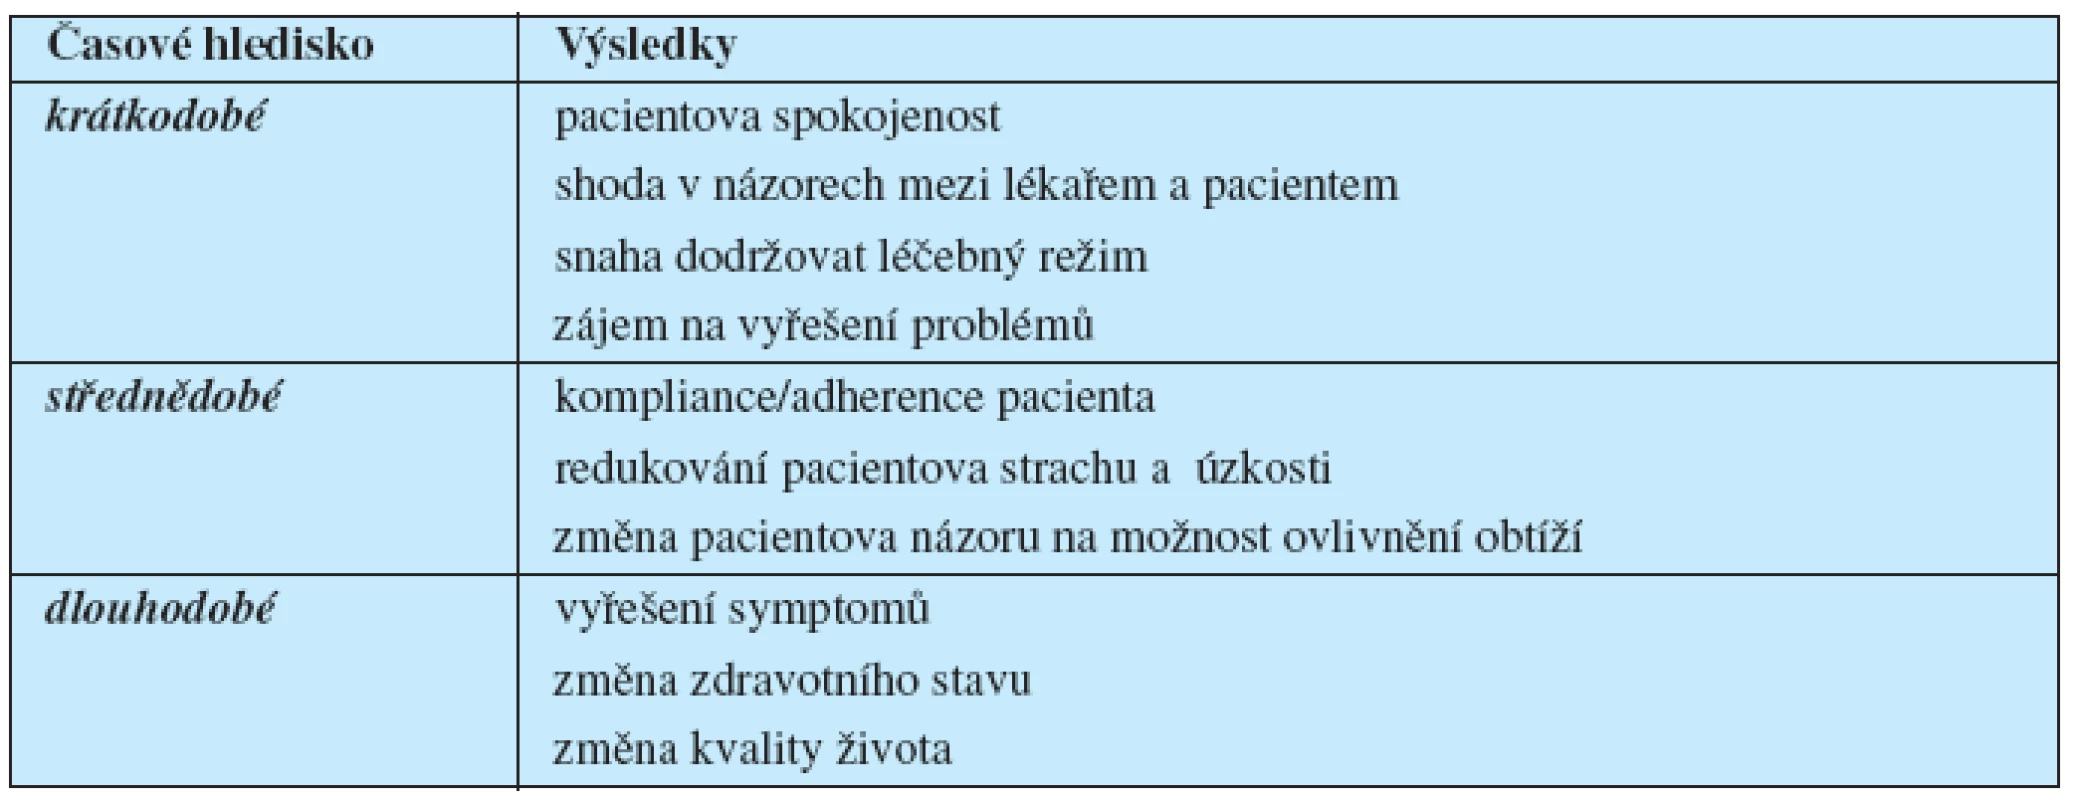 Výsledky pacientova návštěvy u lékaře (modifikovaně podle 20, s. 487)
